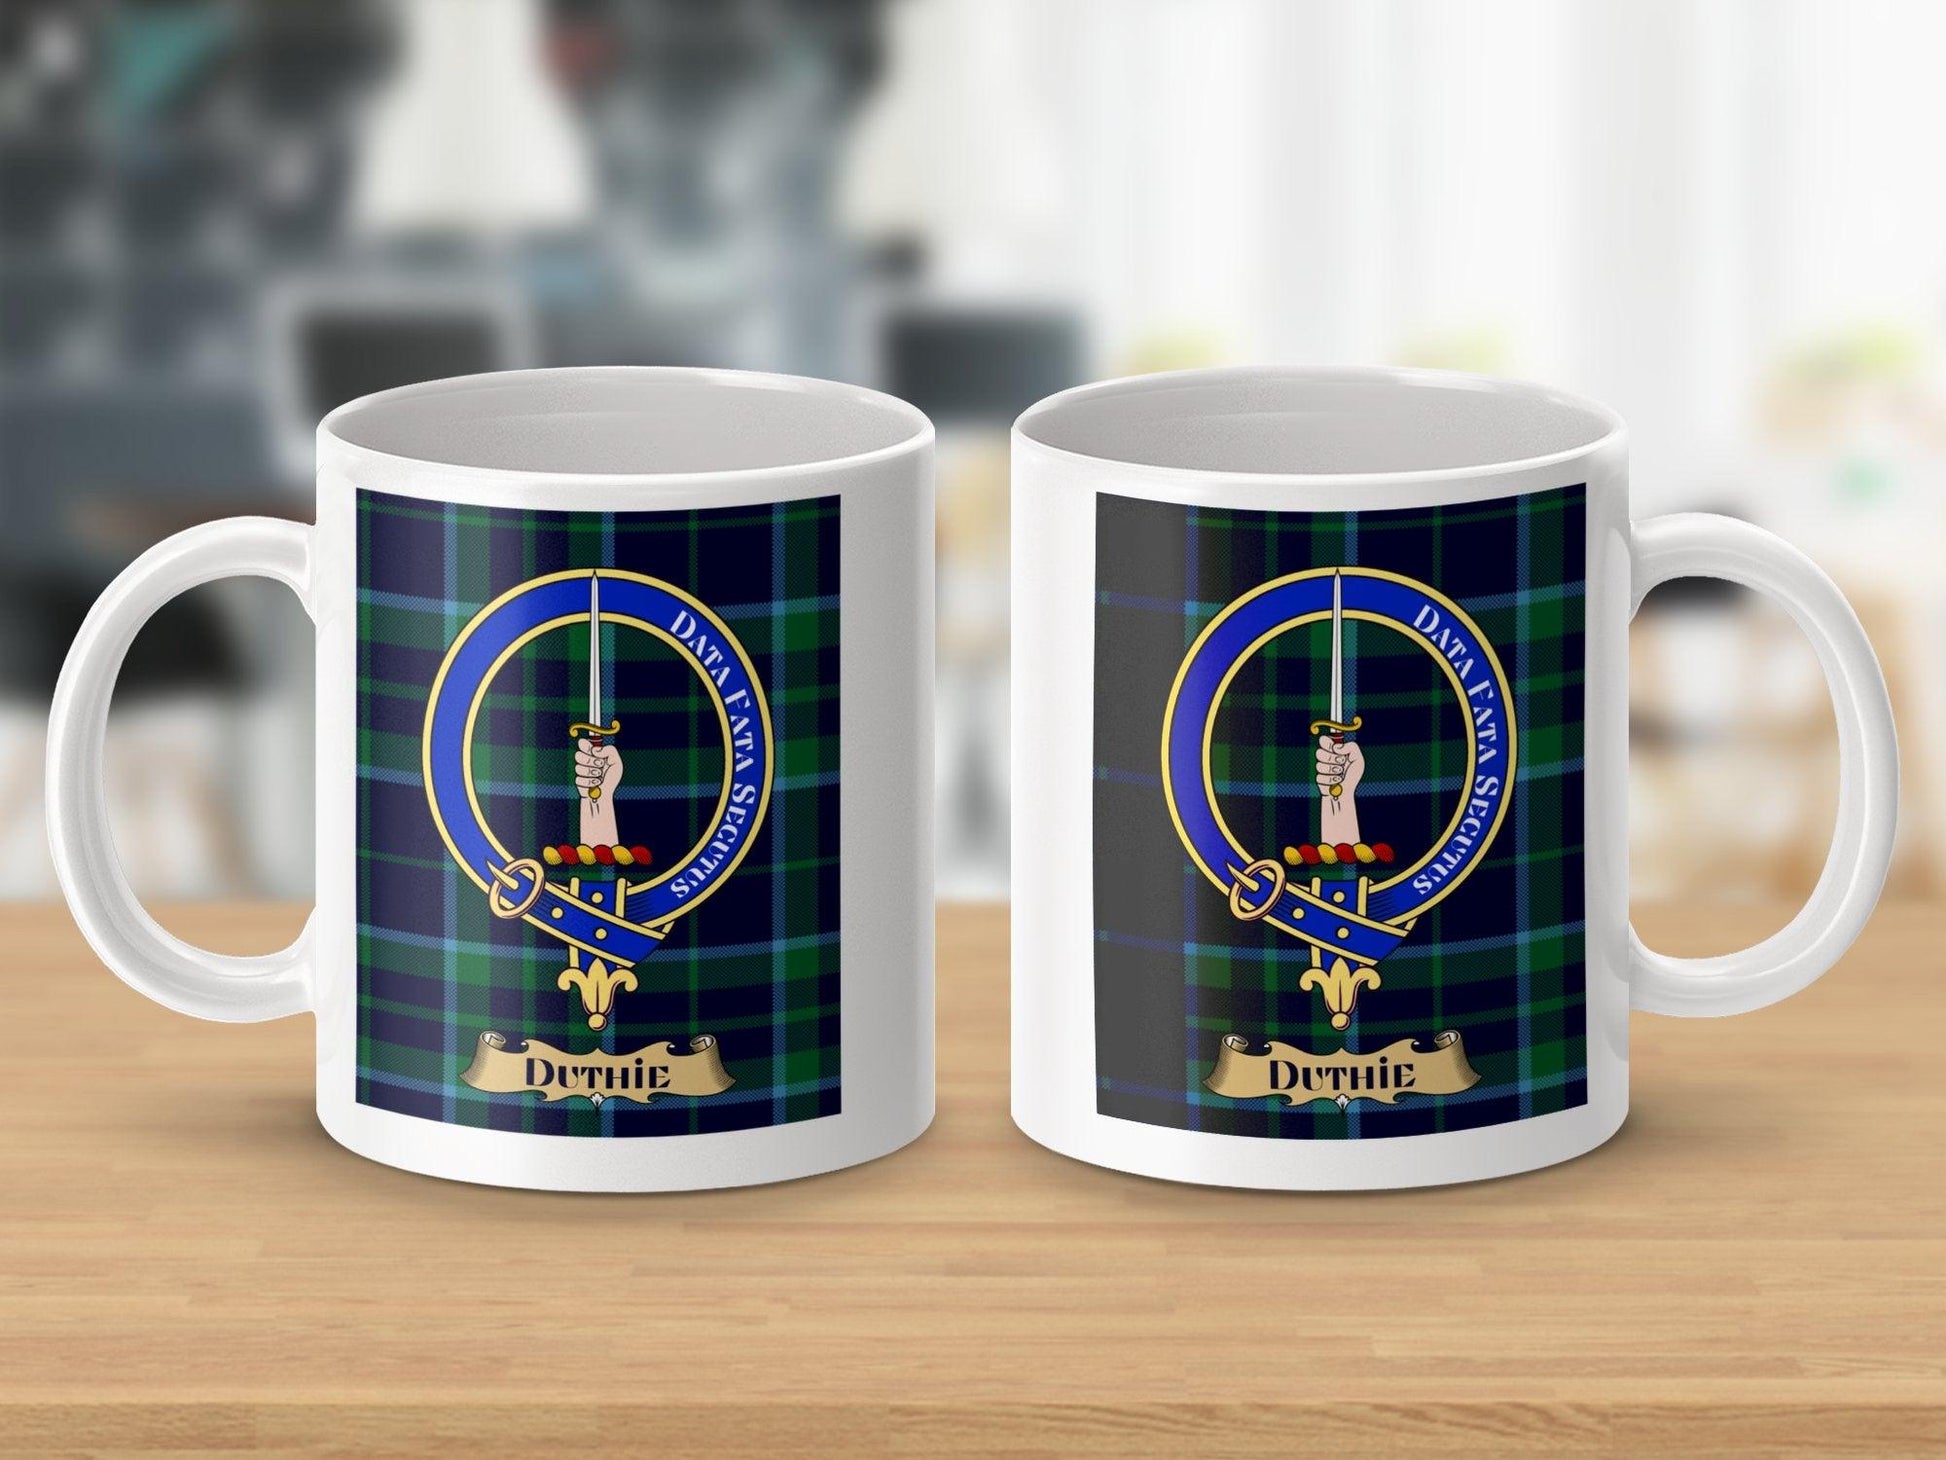 Scottish Duthie Clan Tartan Crest Coffee Mug - Living Stone Gifts